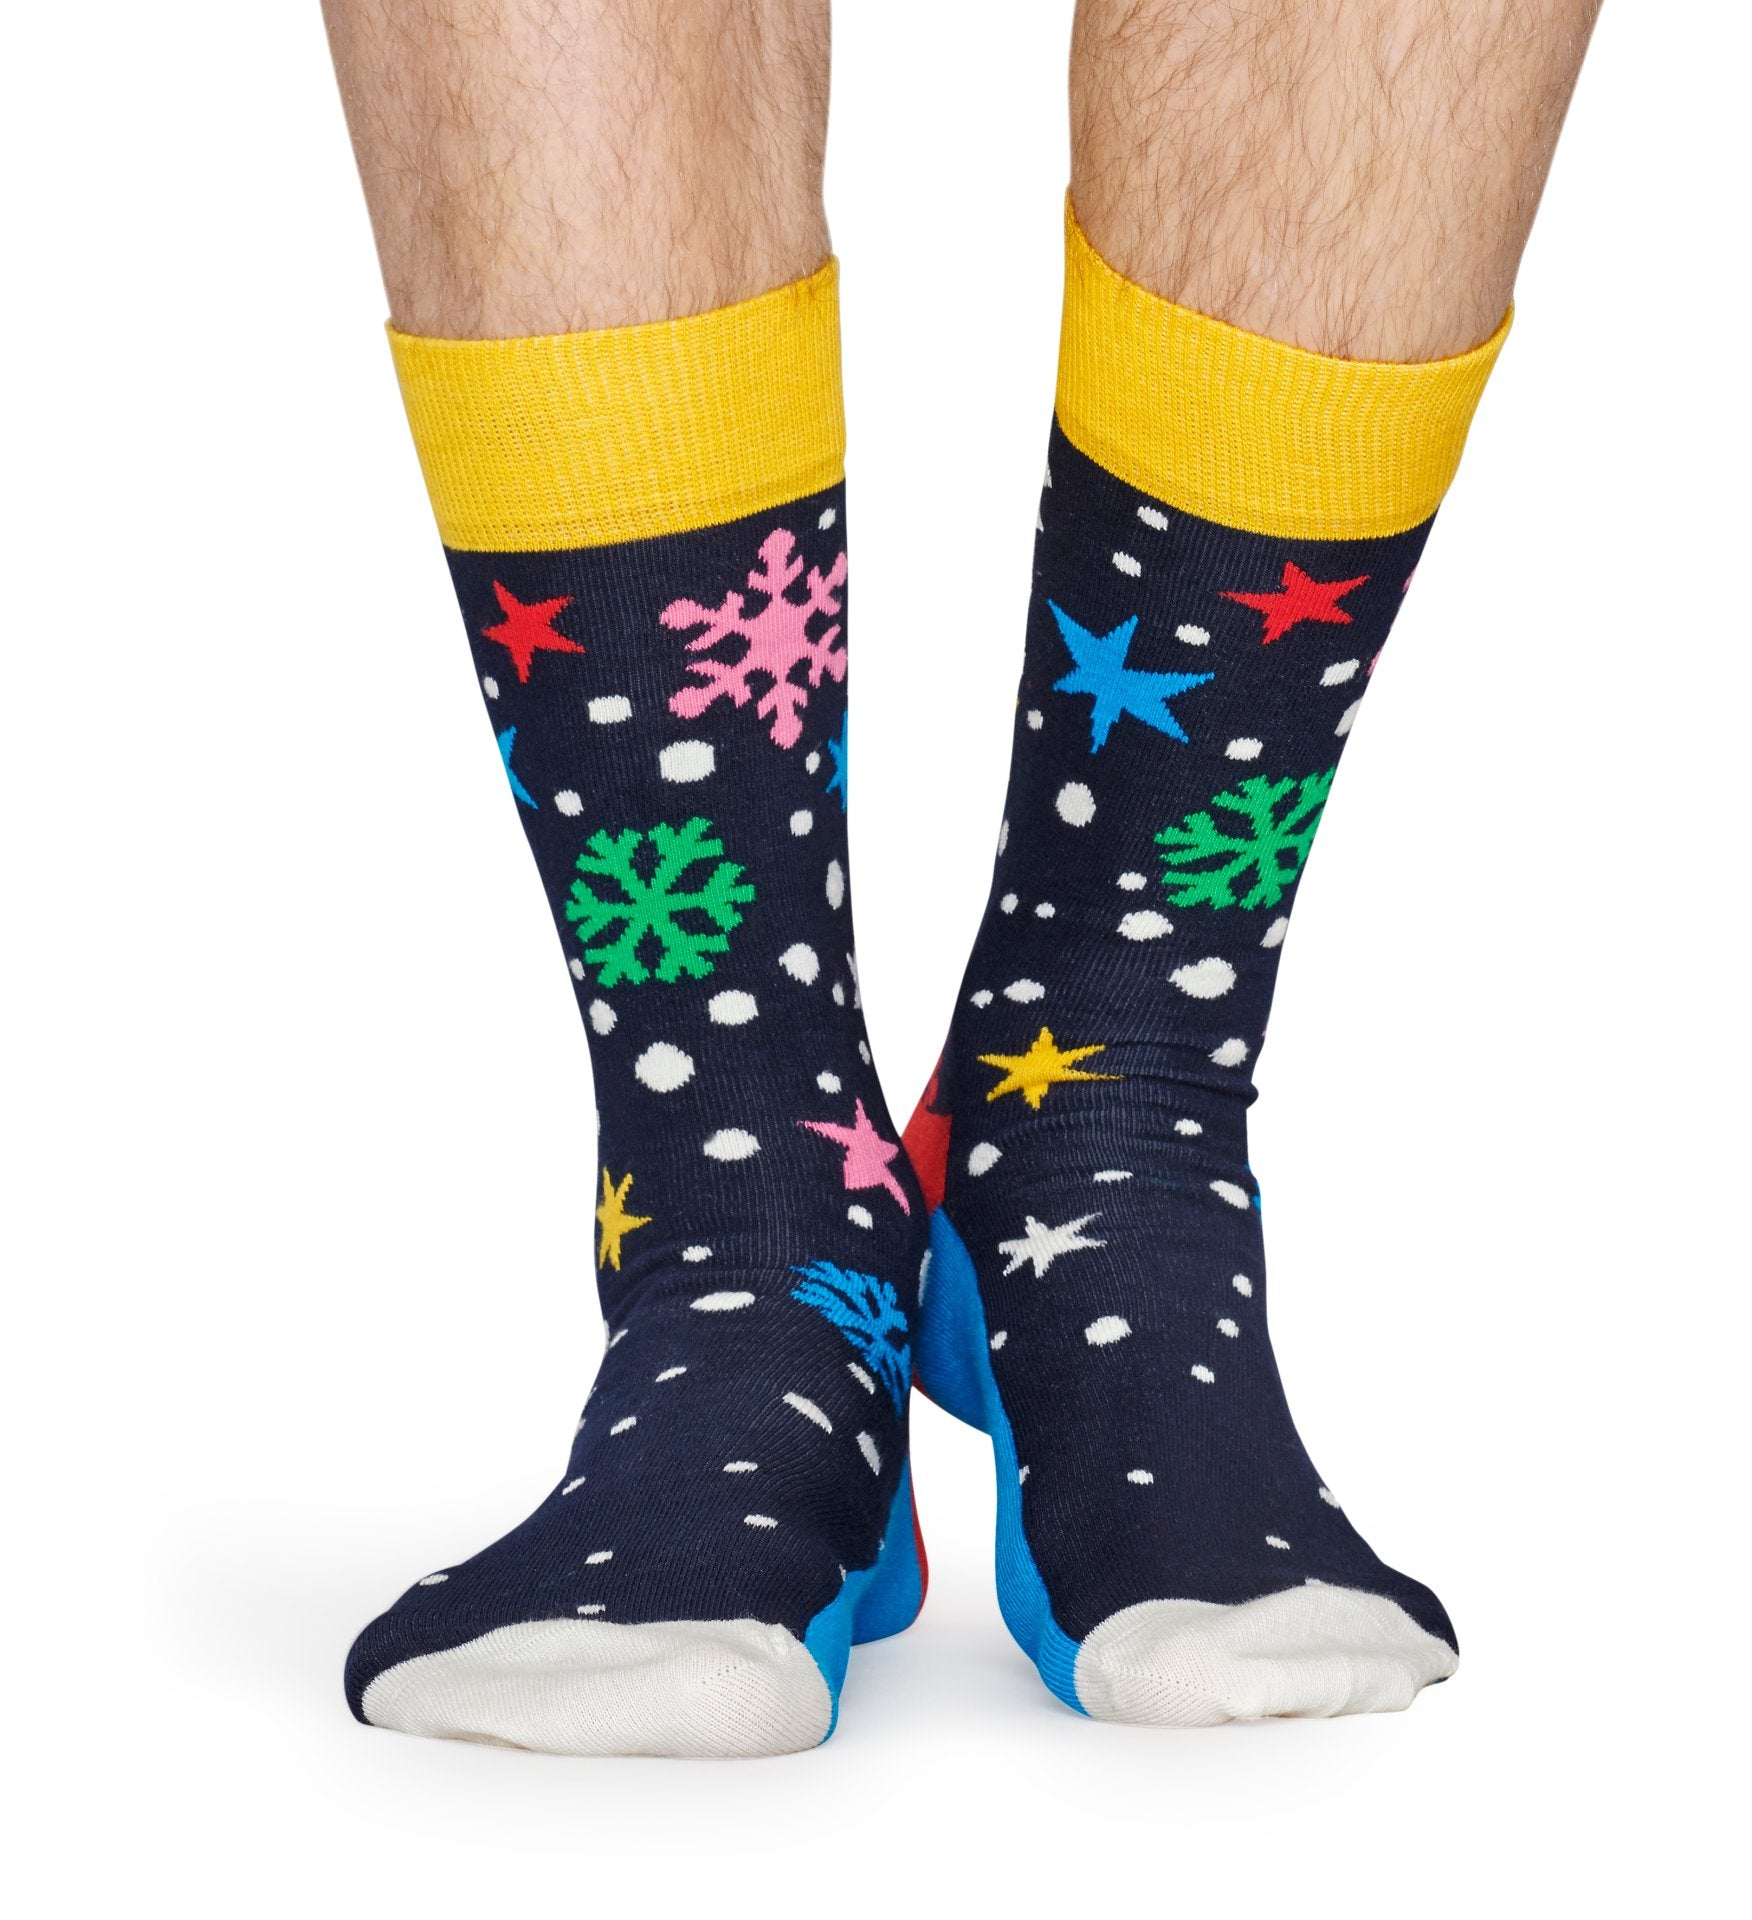 Modré ponožky Happy Socks se sněhovými vločkami a hvězdami, vzor Twinkle Twinkle